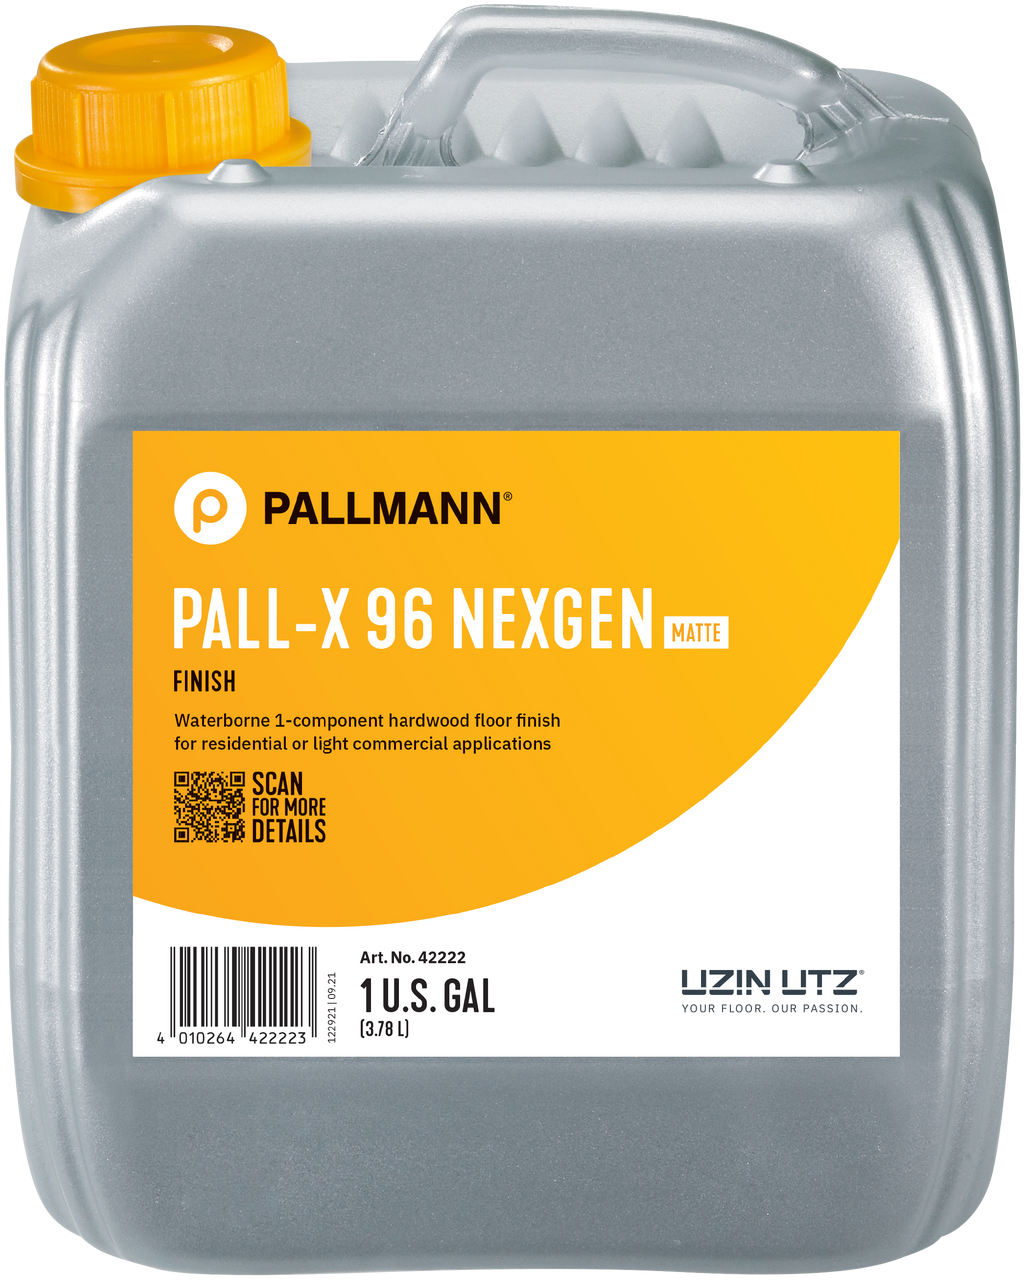 Pallmann Pall-X 96 Nexgen with new label